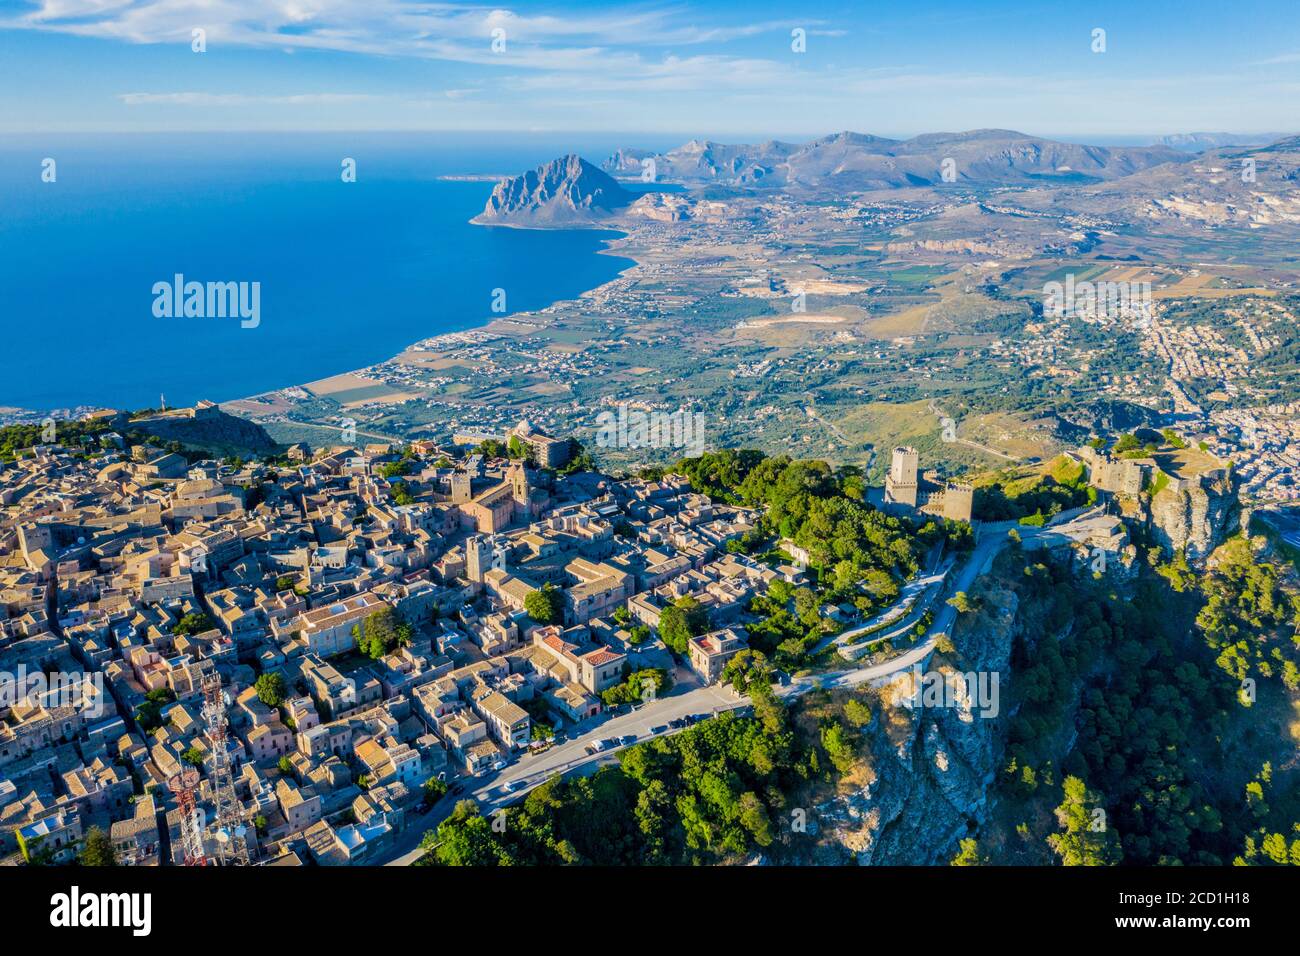 Luftaufnahme von Erice, Sizilien, einer Stadt auf einem Berg im Nordwesten Siziliens, in der Nähe von Trapani, Italien, mit Blick auf das Naturschutzgebiet Monte Cofano im Hintergrund Stockfoto